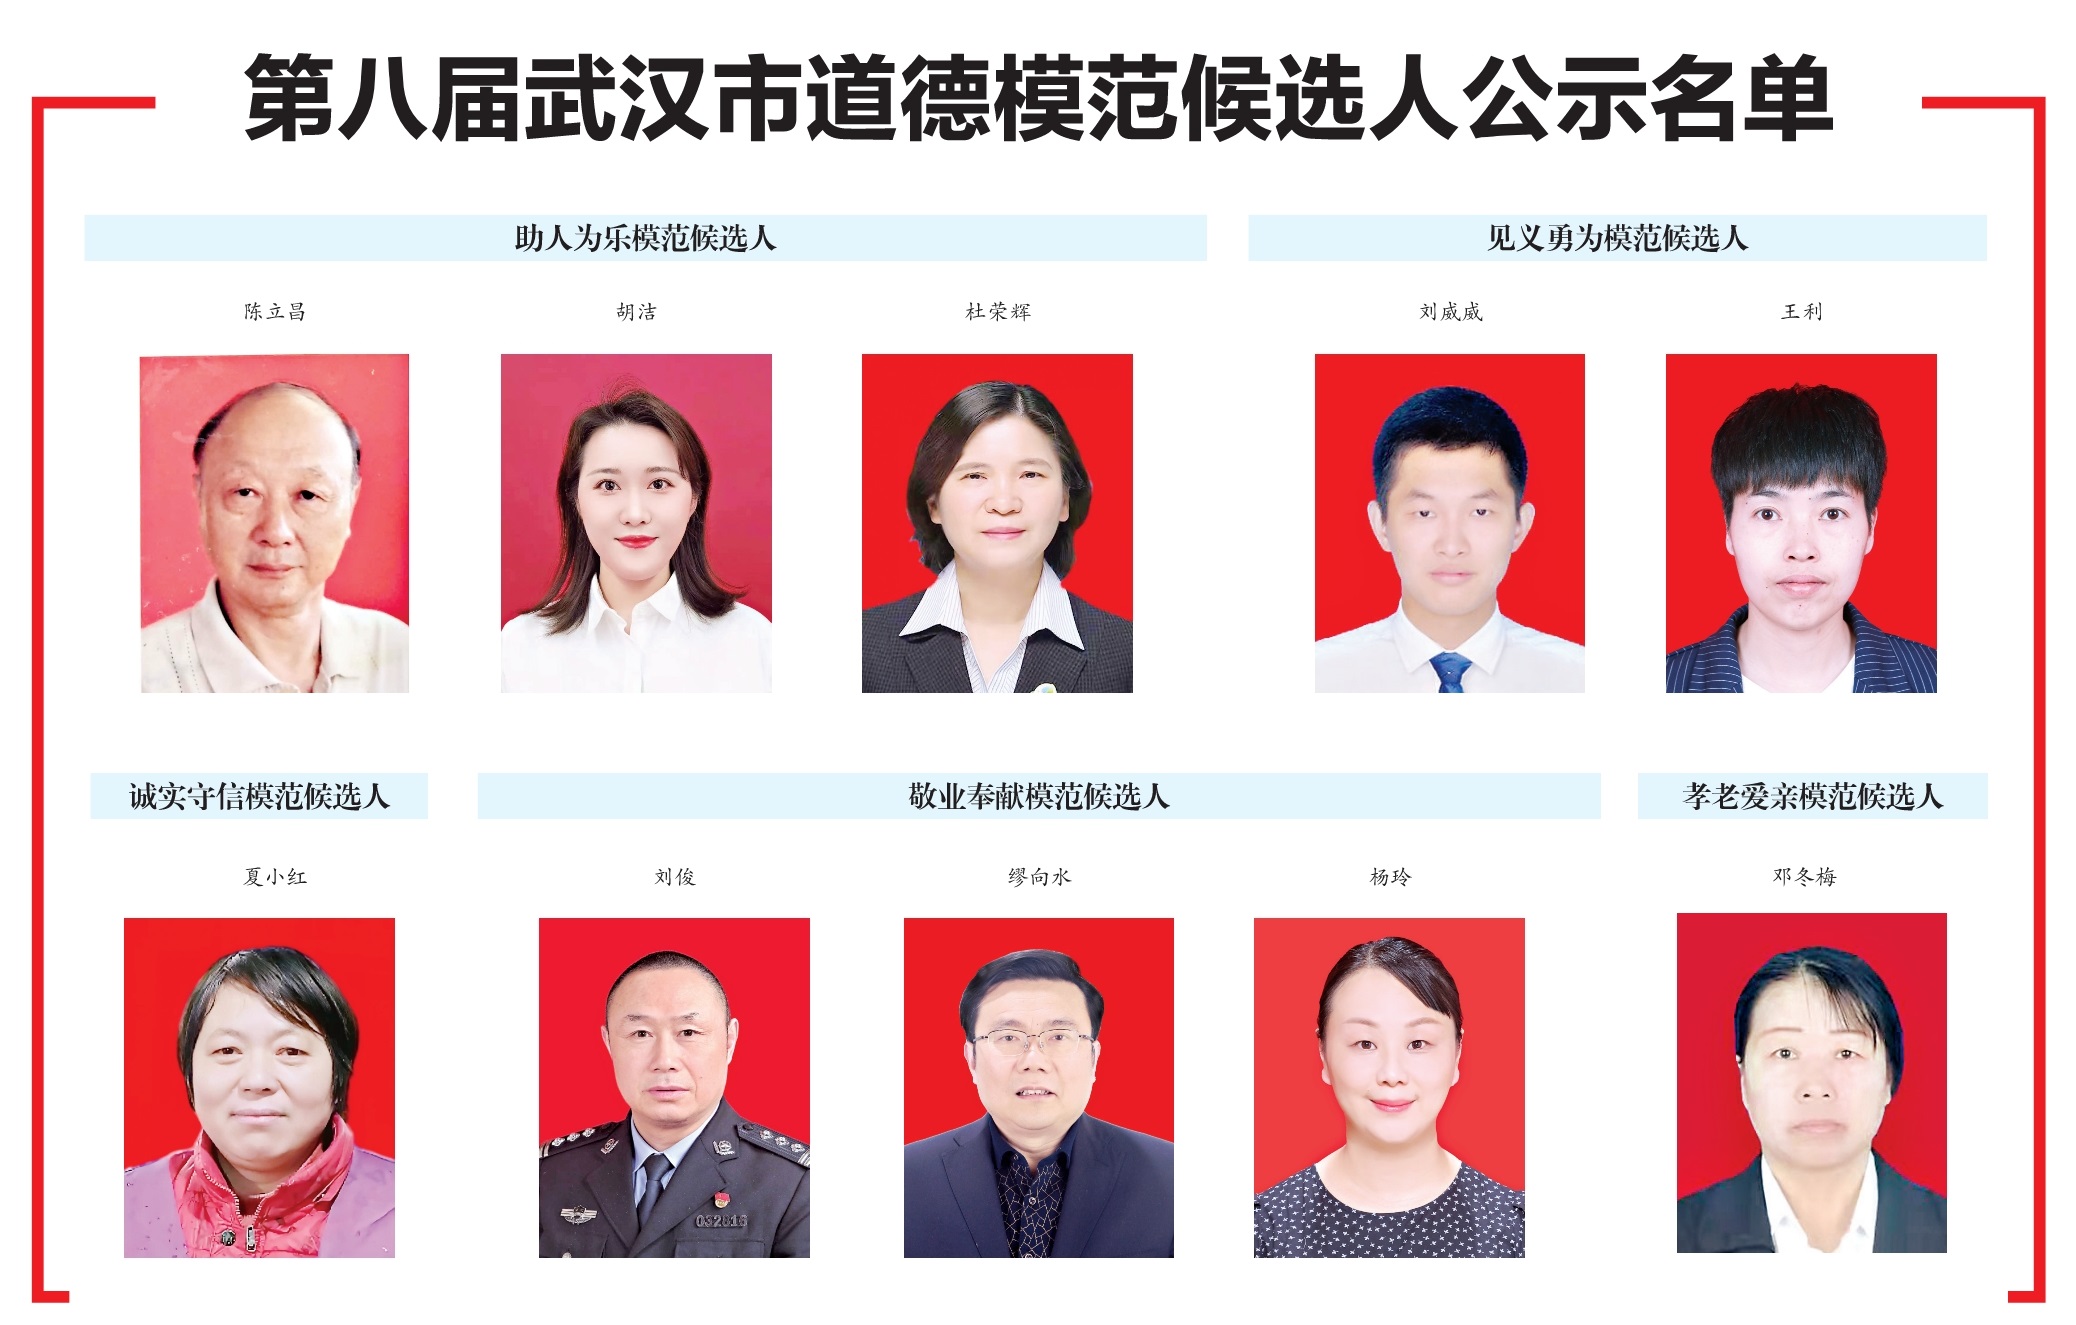 第八届武汉市道德模范候选人开始公示 我区推荐的两名同志入选